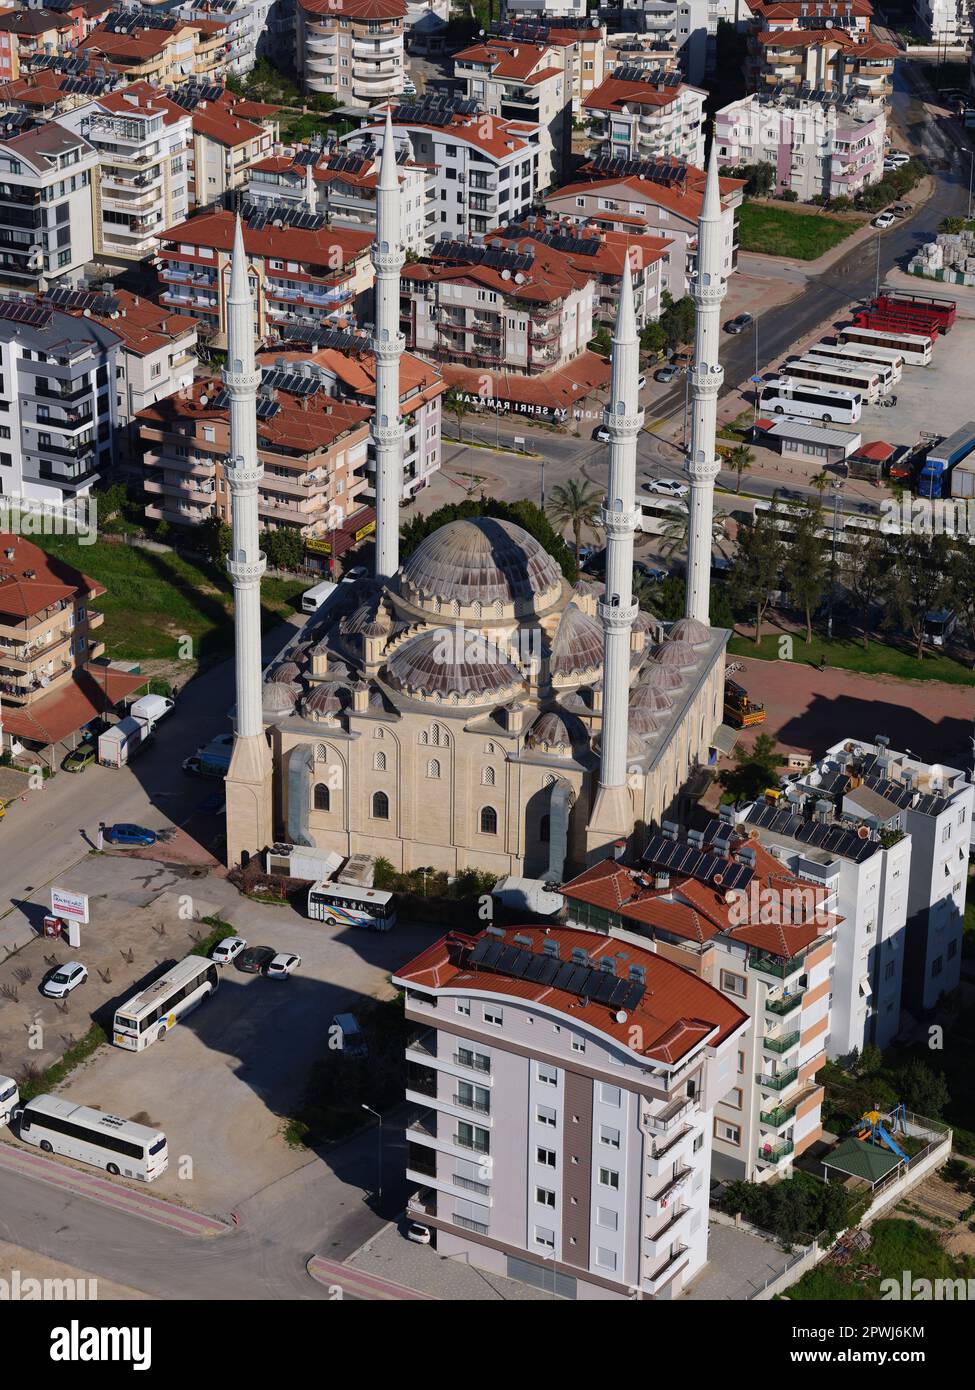 VUE AÉRIENNE. Complexe de la mosquée centrale avec ses quatre hauts minarets. Örnek, Manavgat, province d'Antalya, Turquie. Banque D'Images